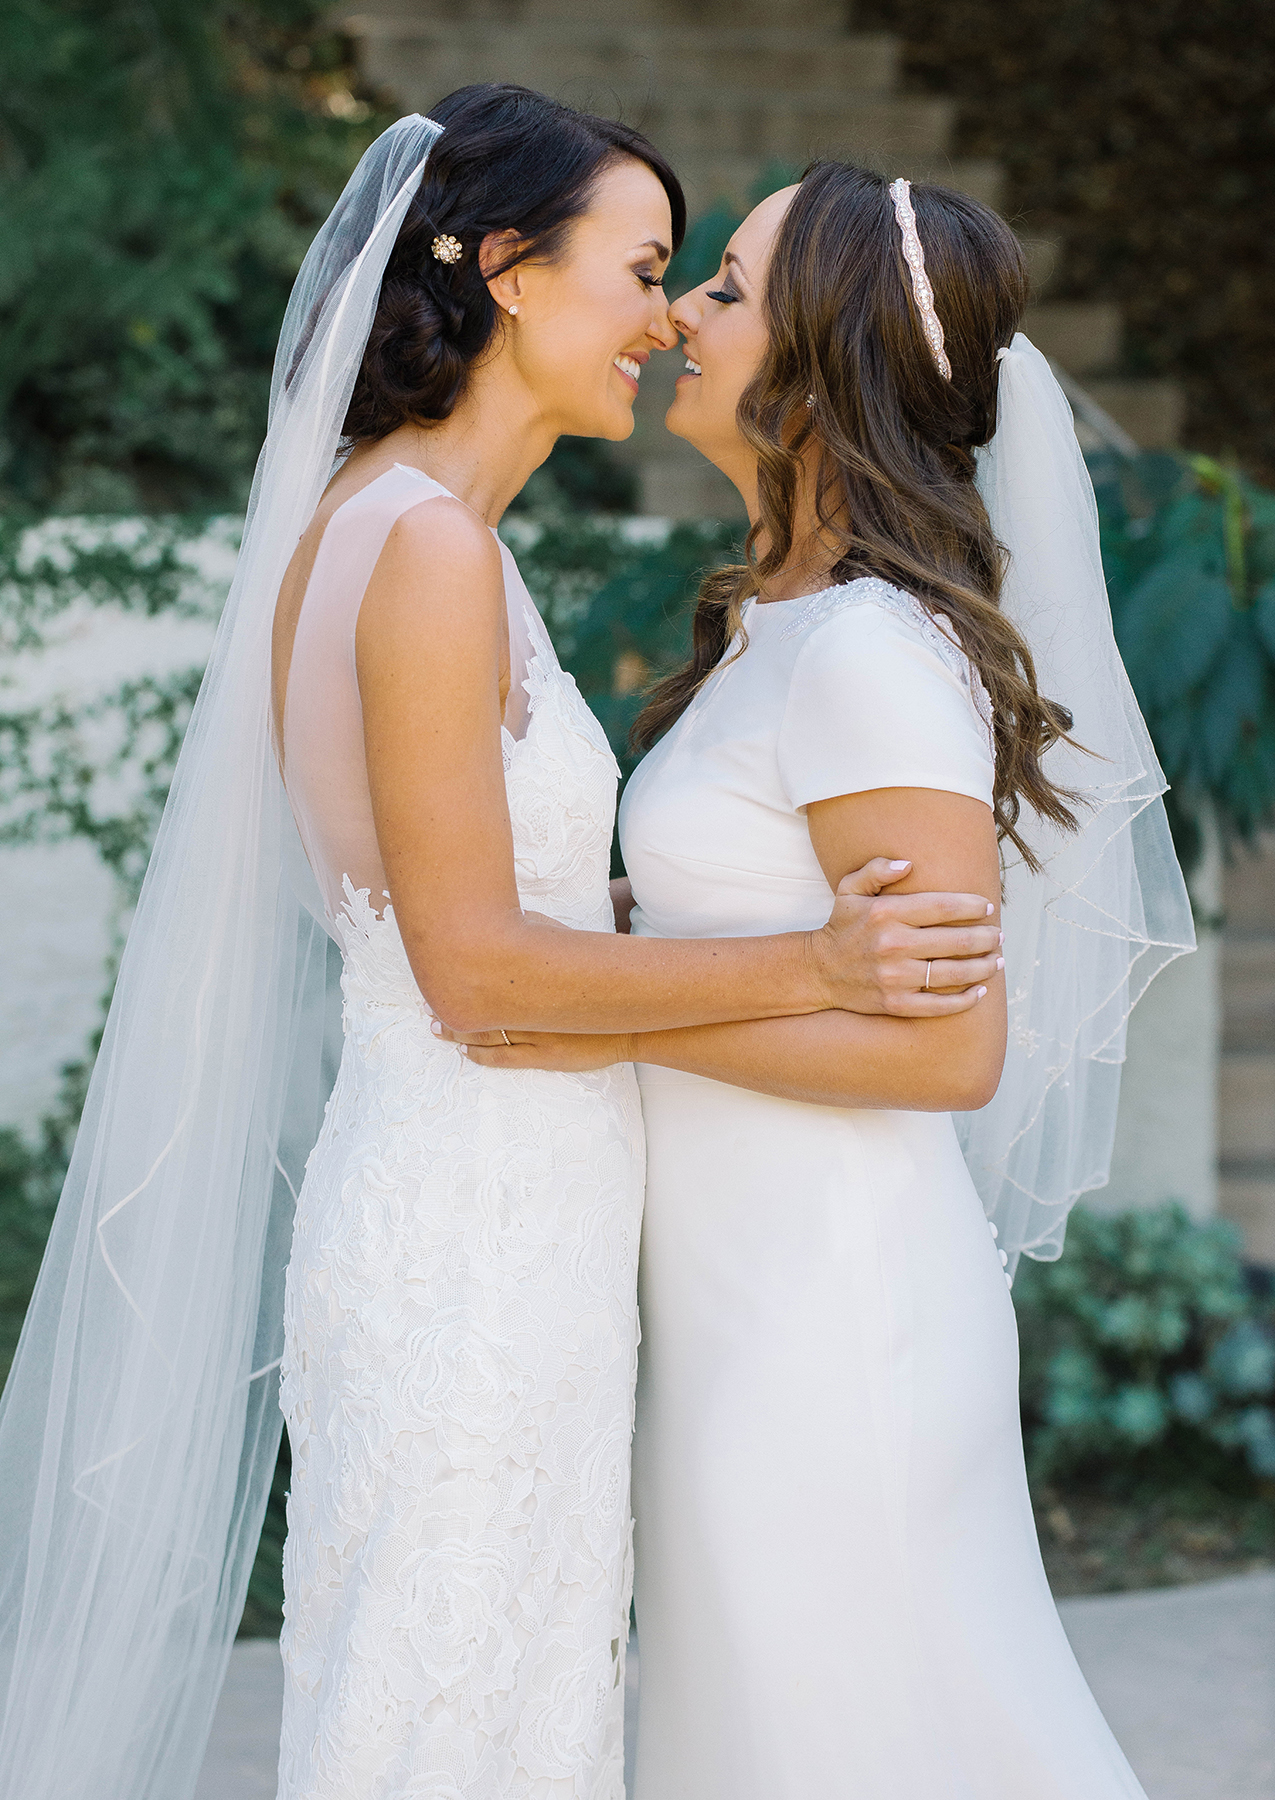 Two women in wedding dresses embrace.